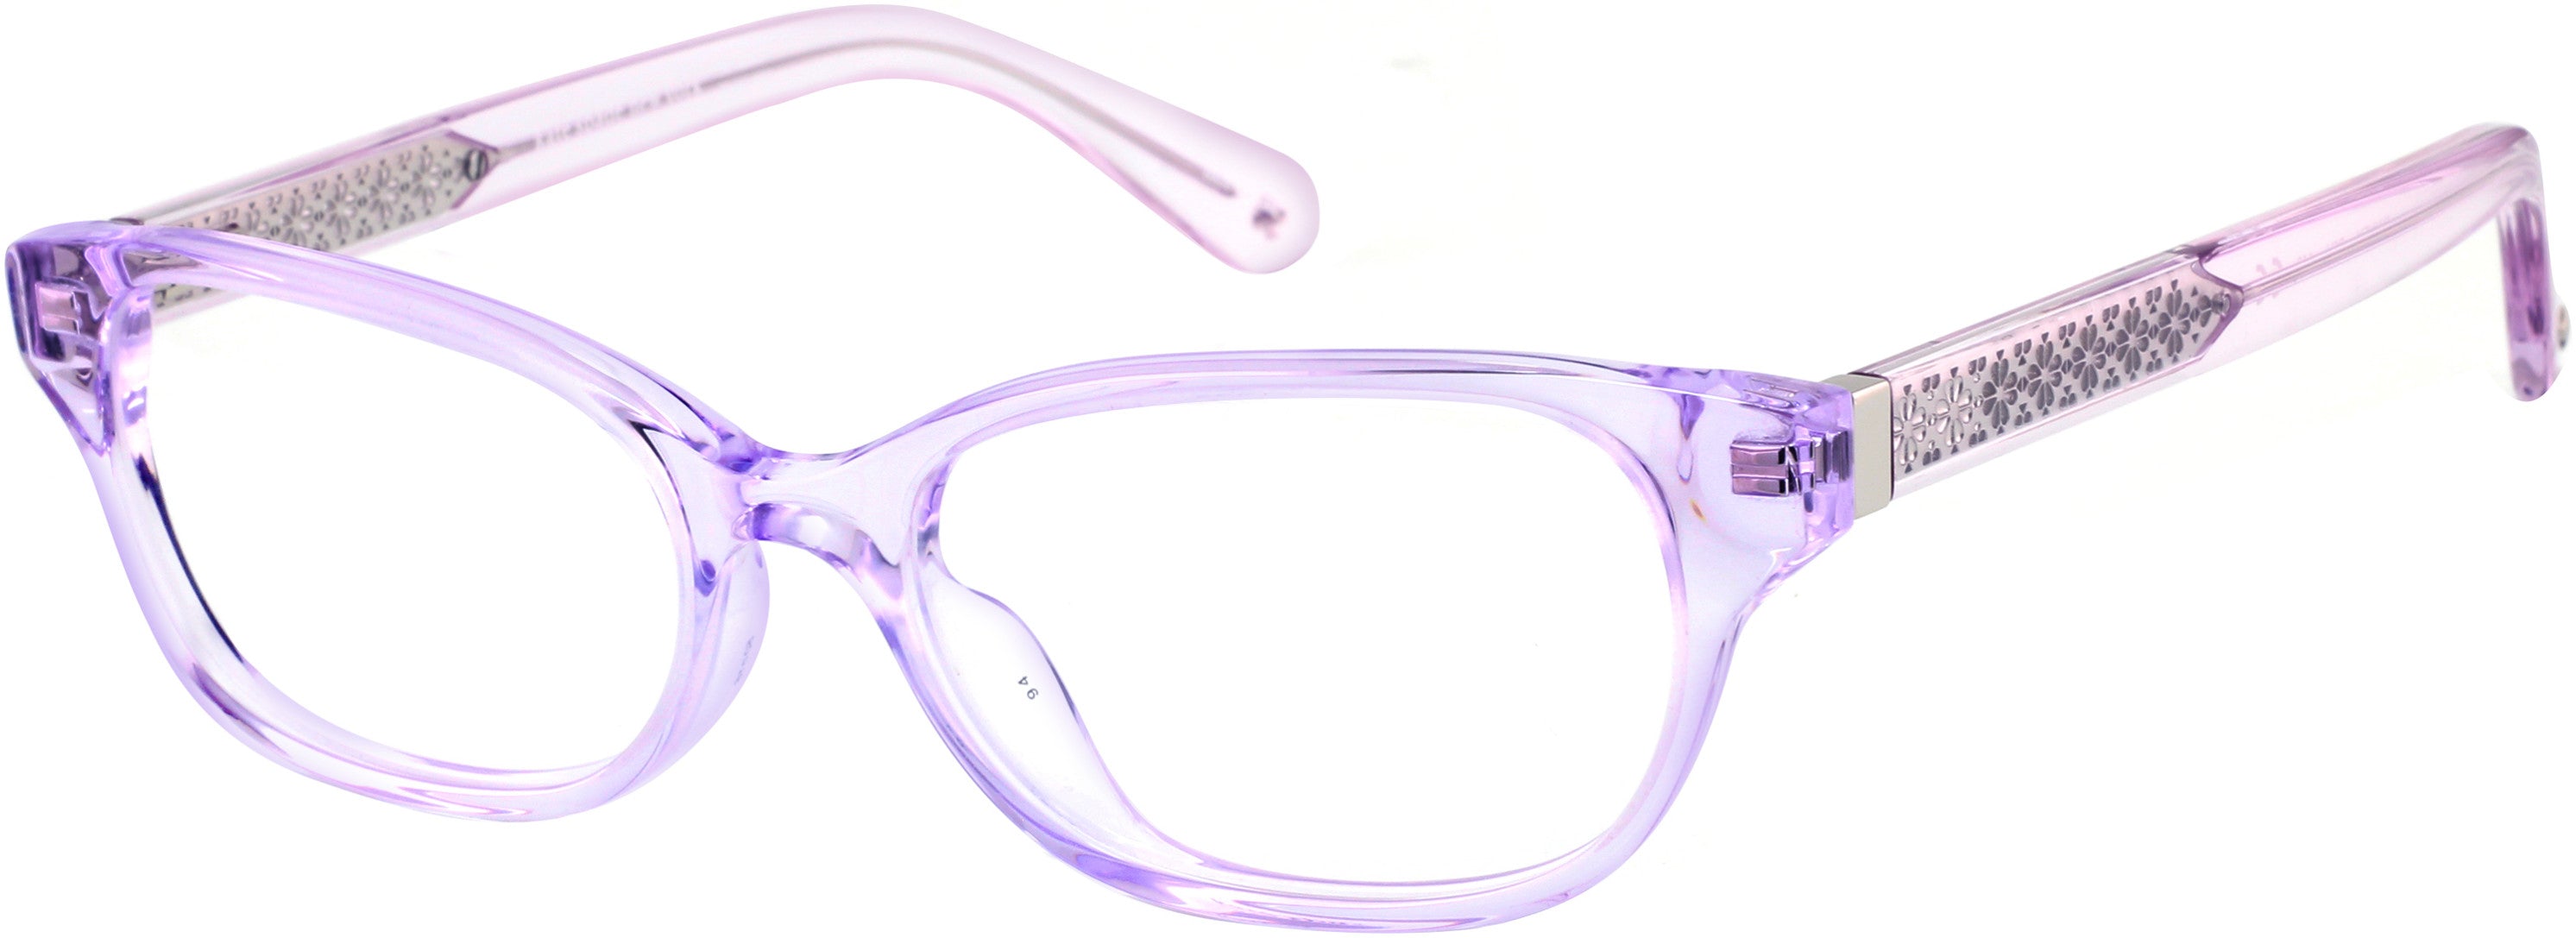 Kate Spade Rainey Rectangular Eyeglasses 0B3V-0B3V  Violet (00 Demo Lens)